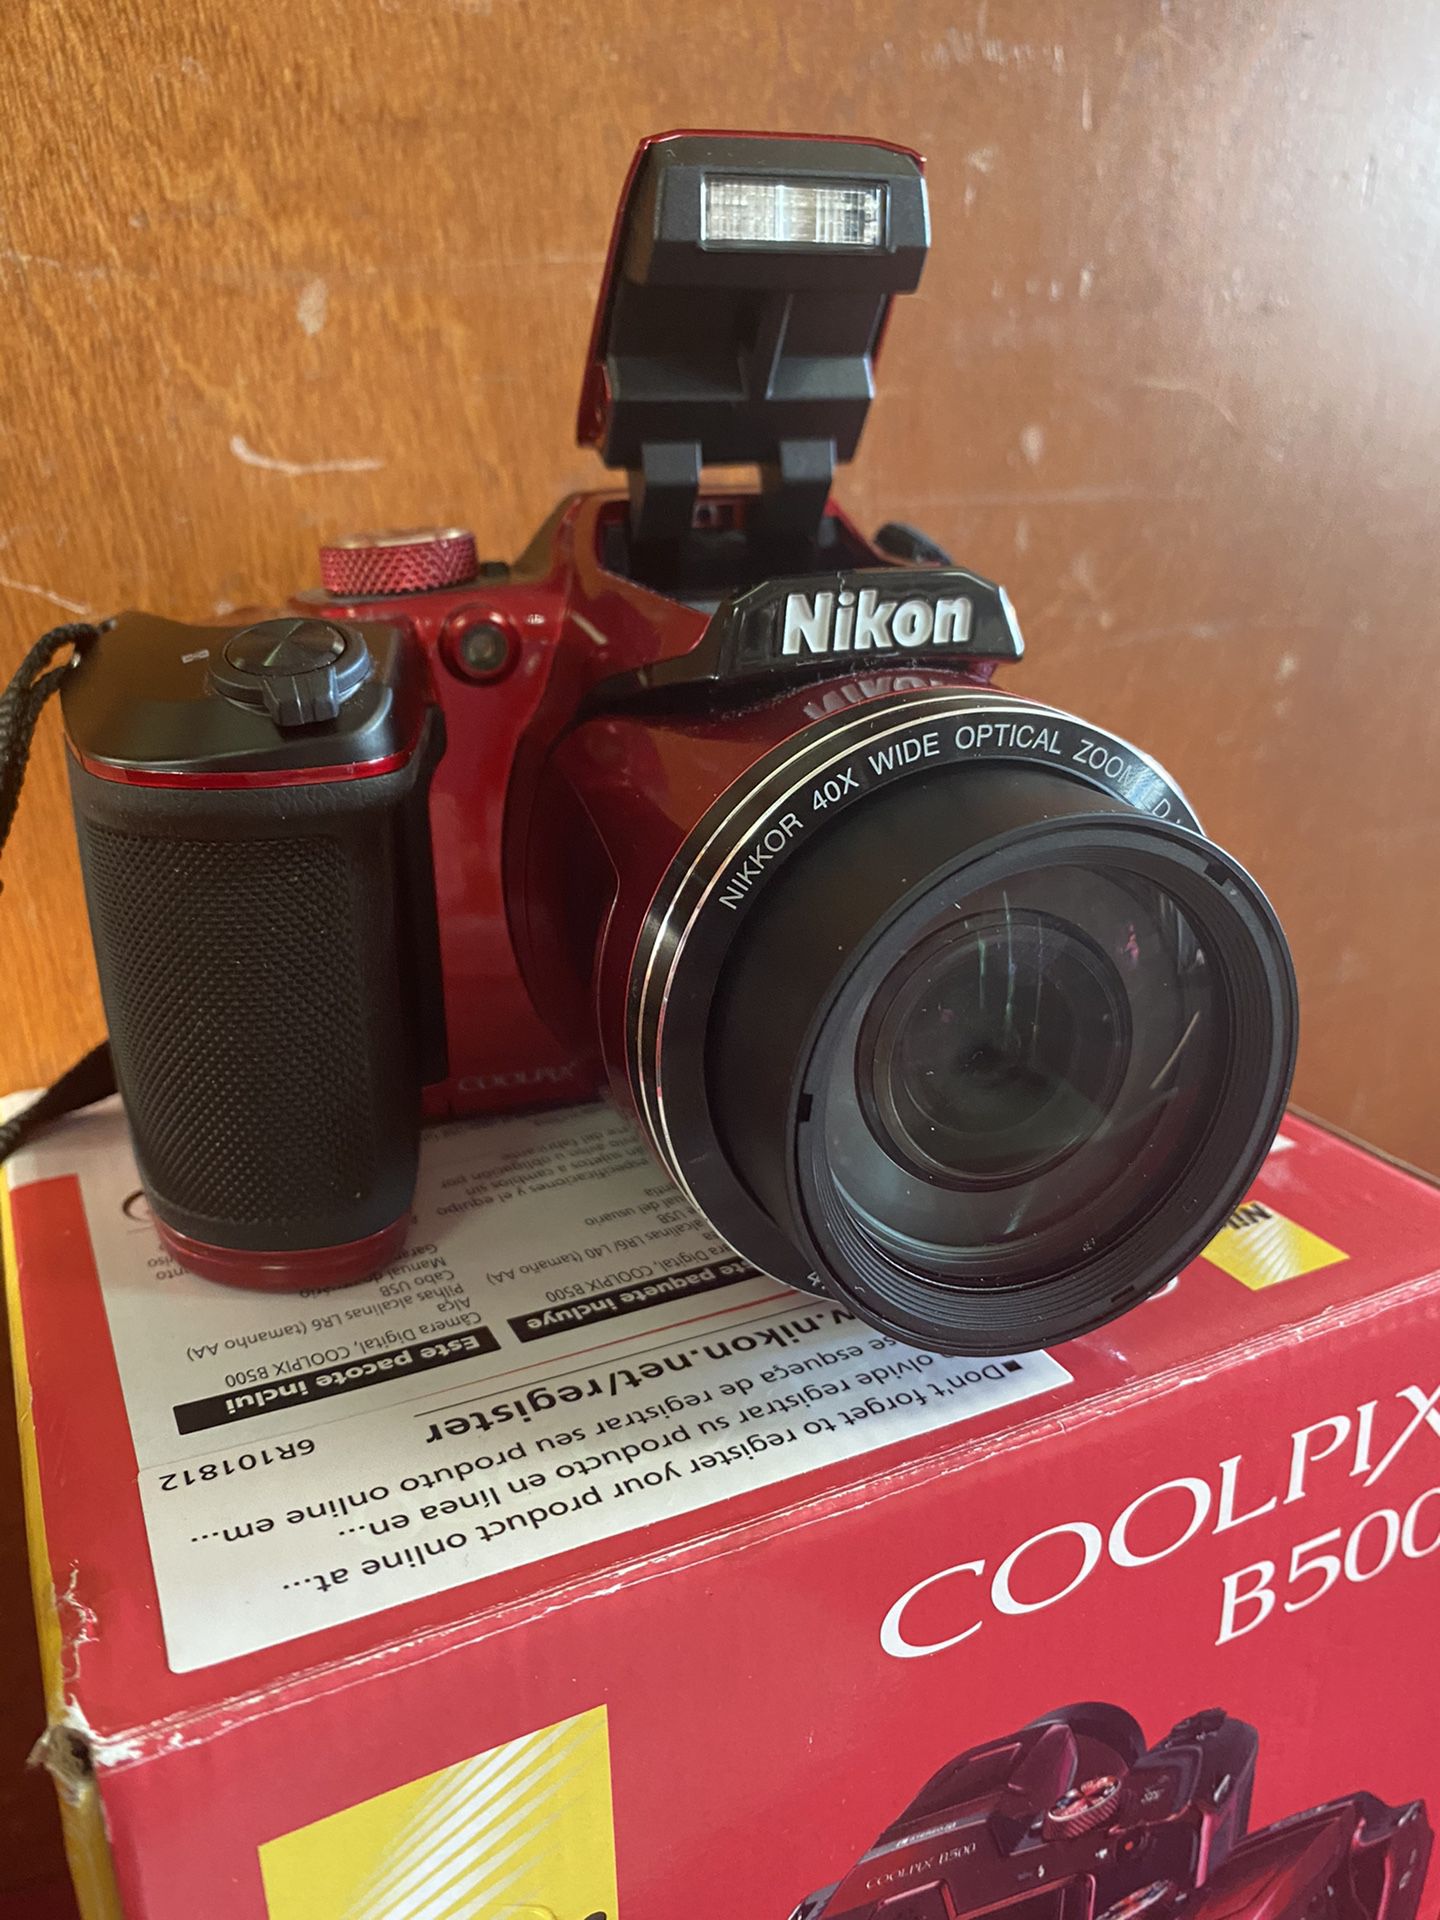 Nikon Cool Pix 16.0 MegaPixels 3 “ Screen Full HD Movie Model B500